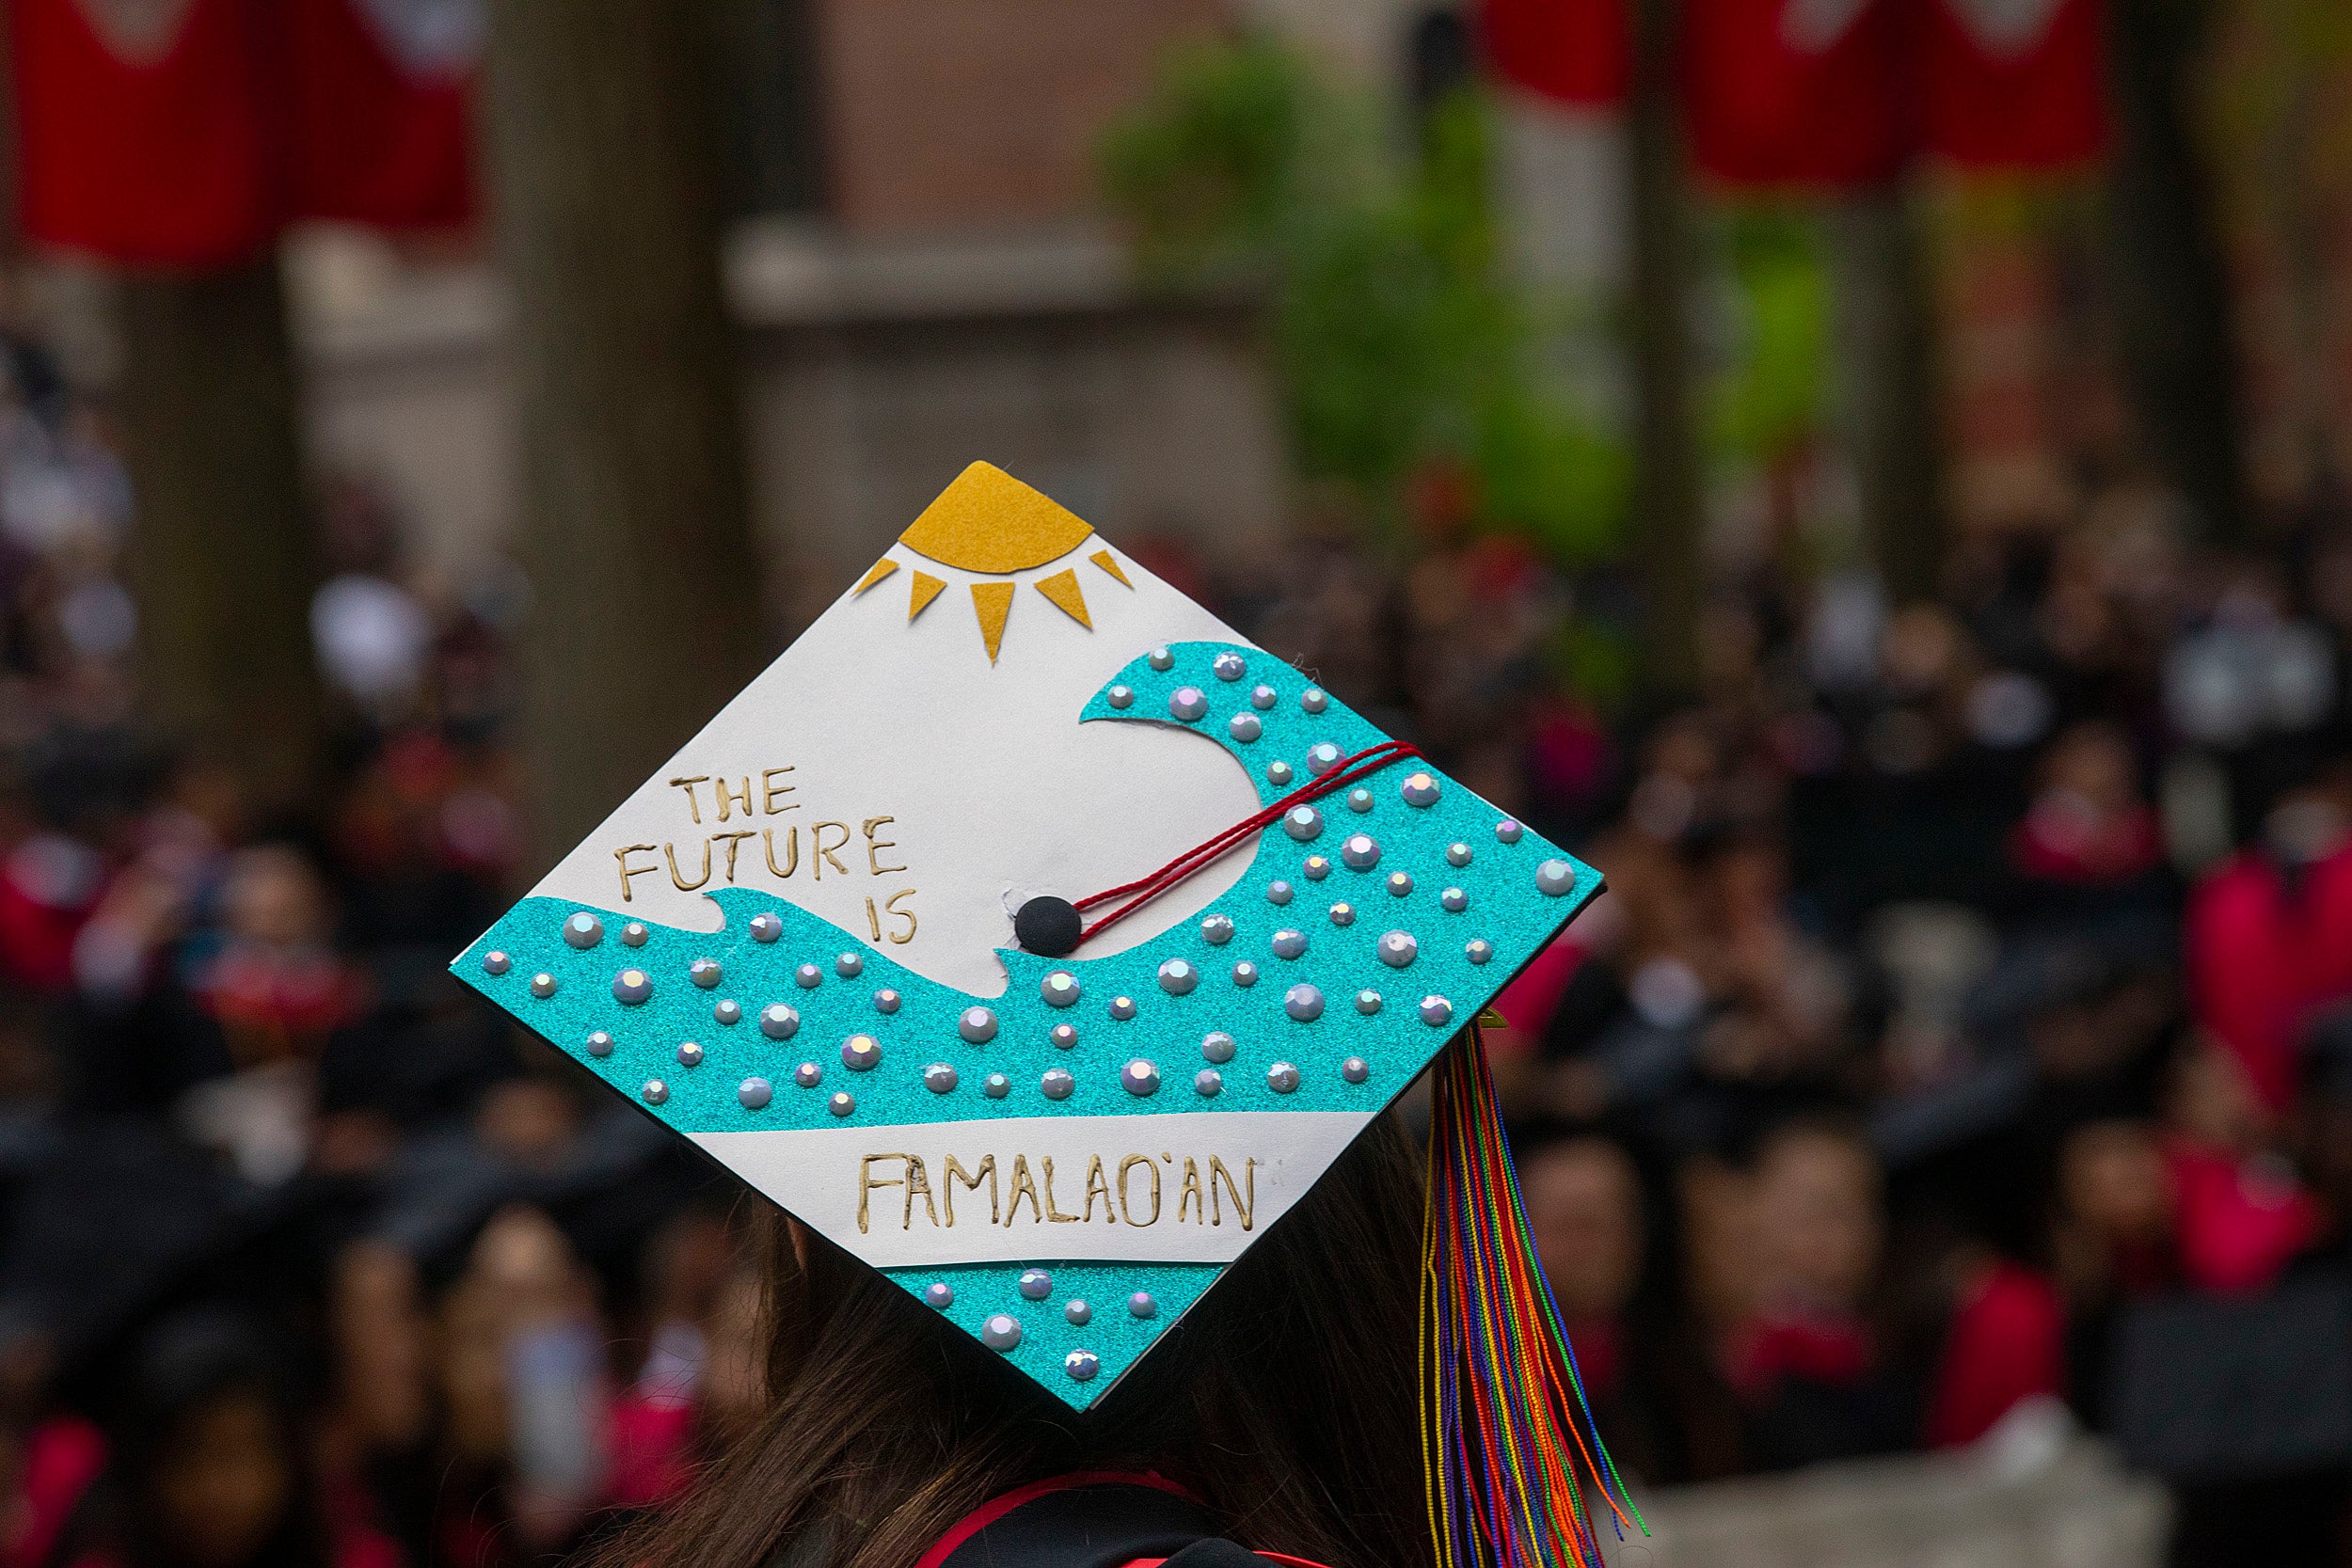 A decorated grad cap